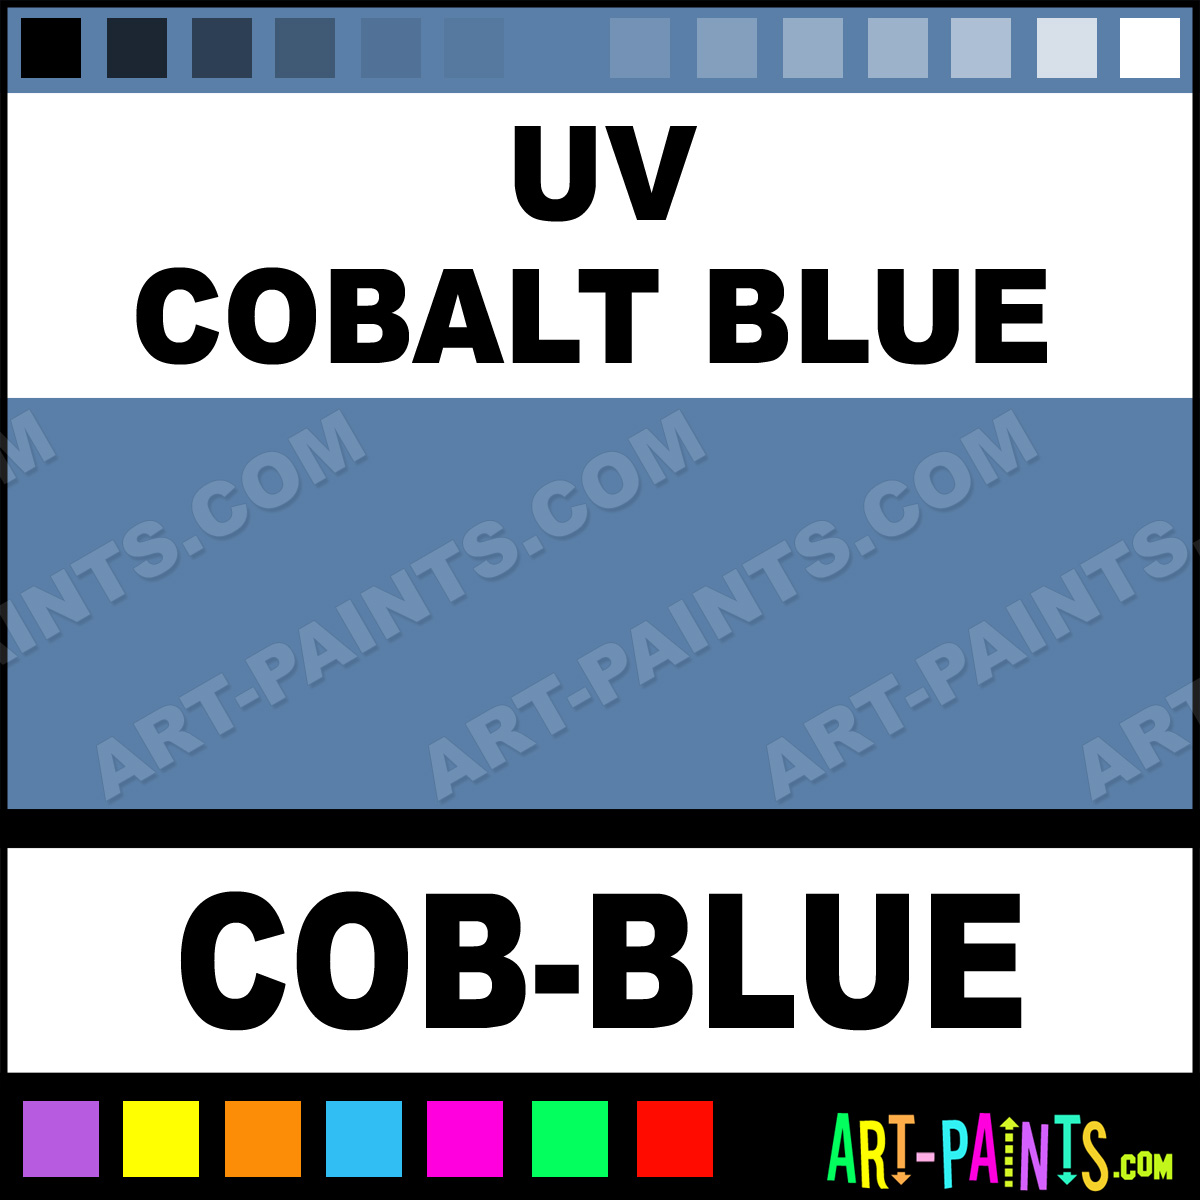 UV Cobalt Blue Paint CobBlue